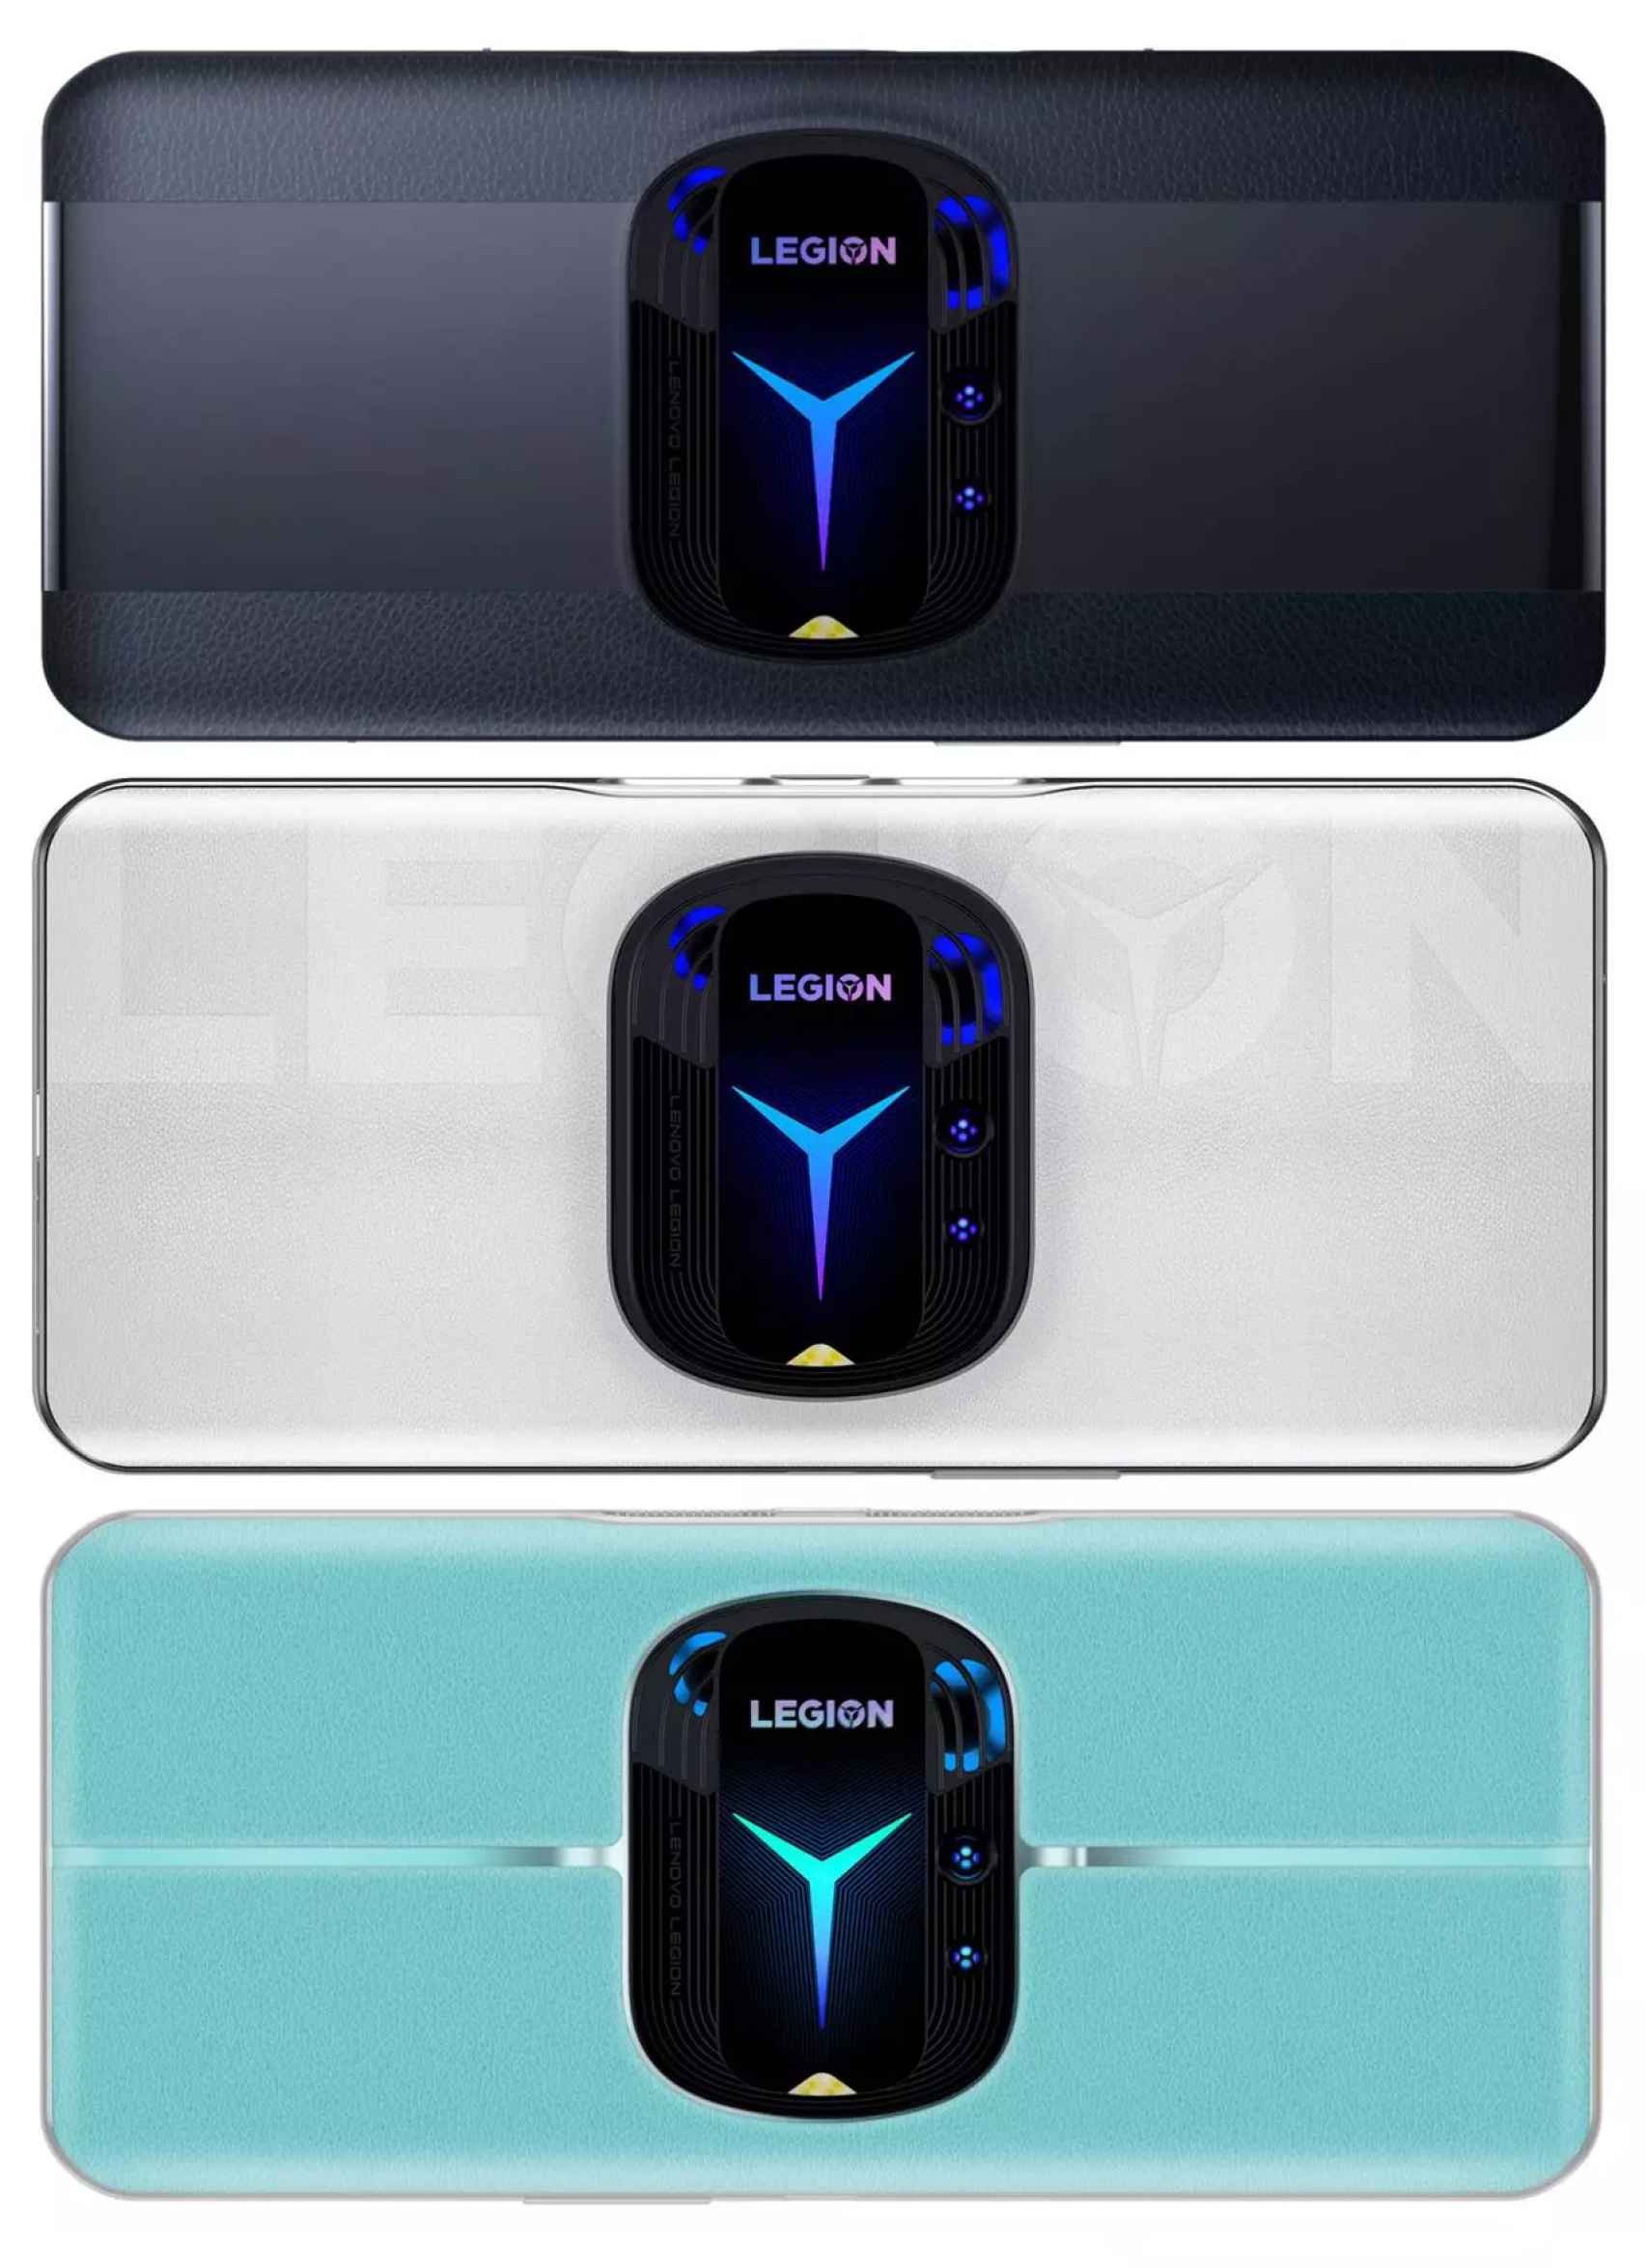 Lenovo Legion 3 en más colores